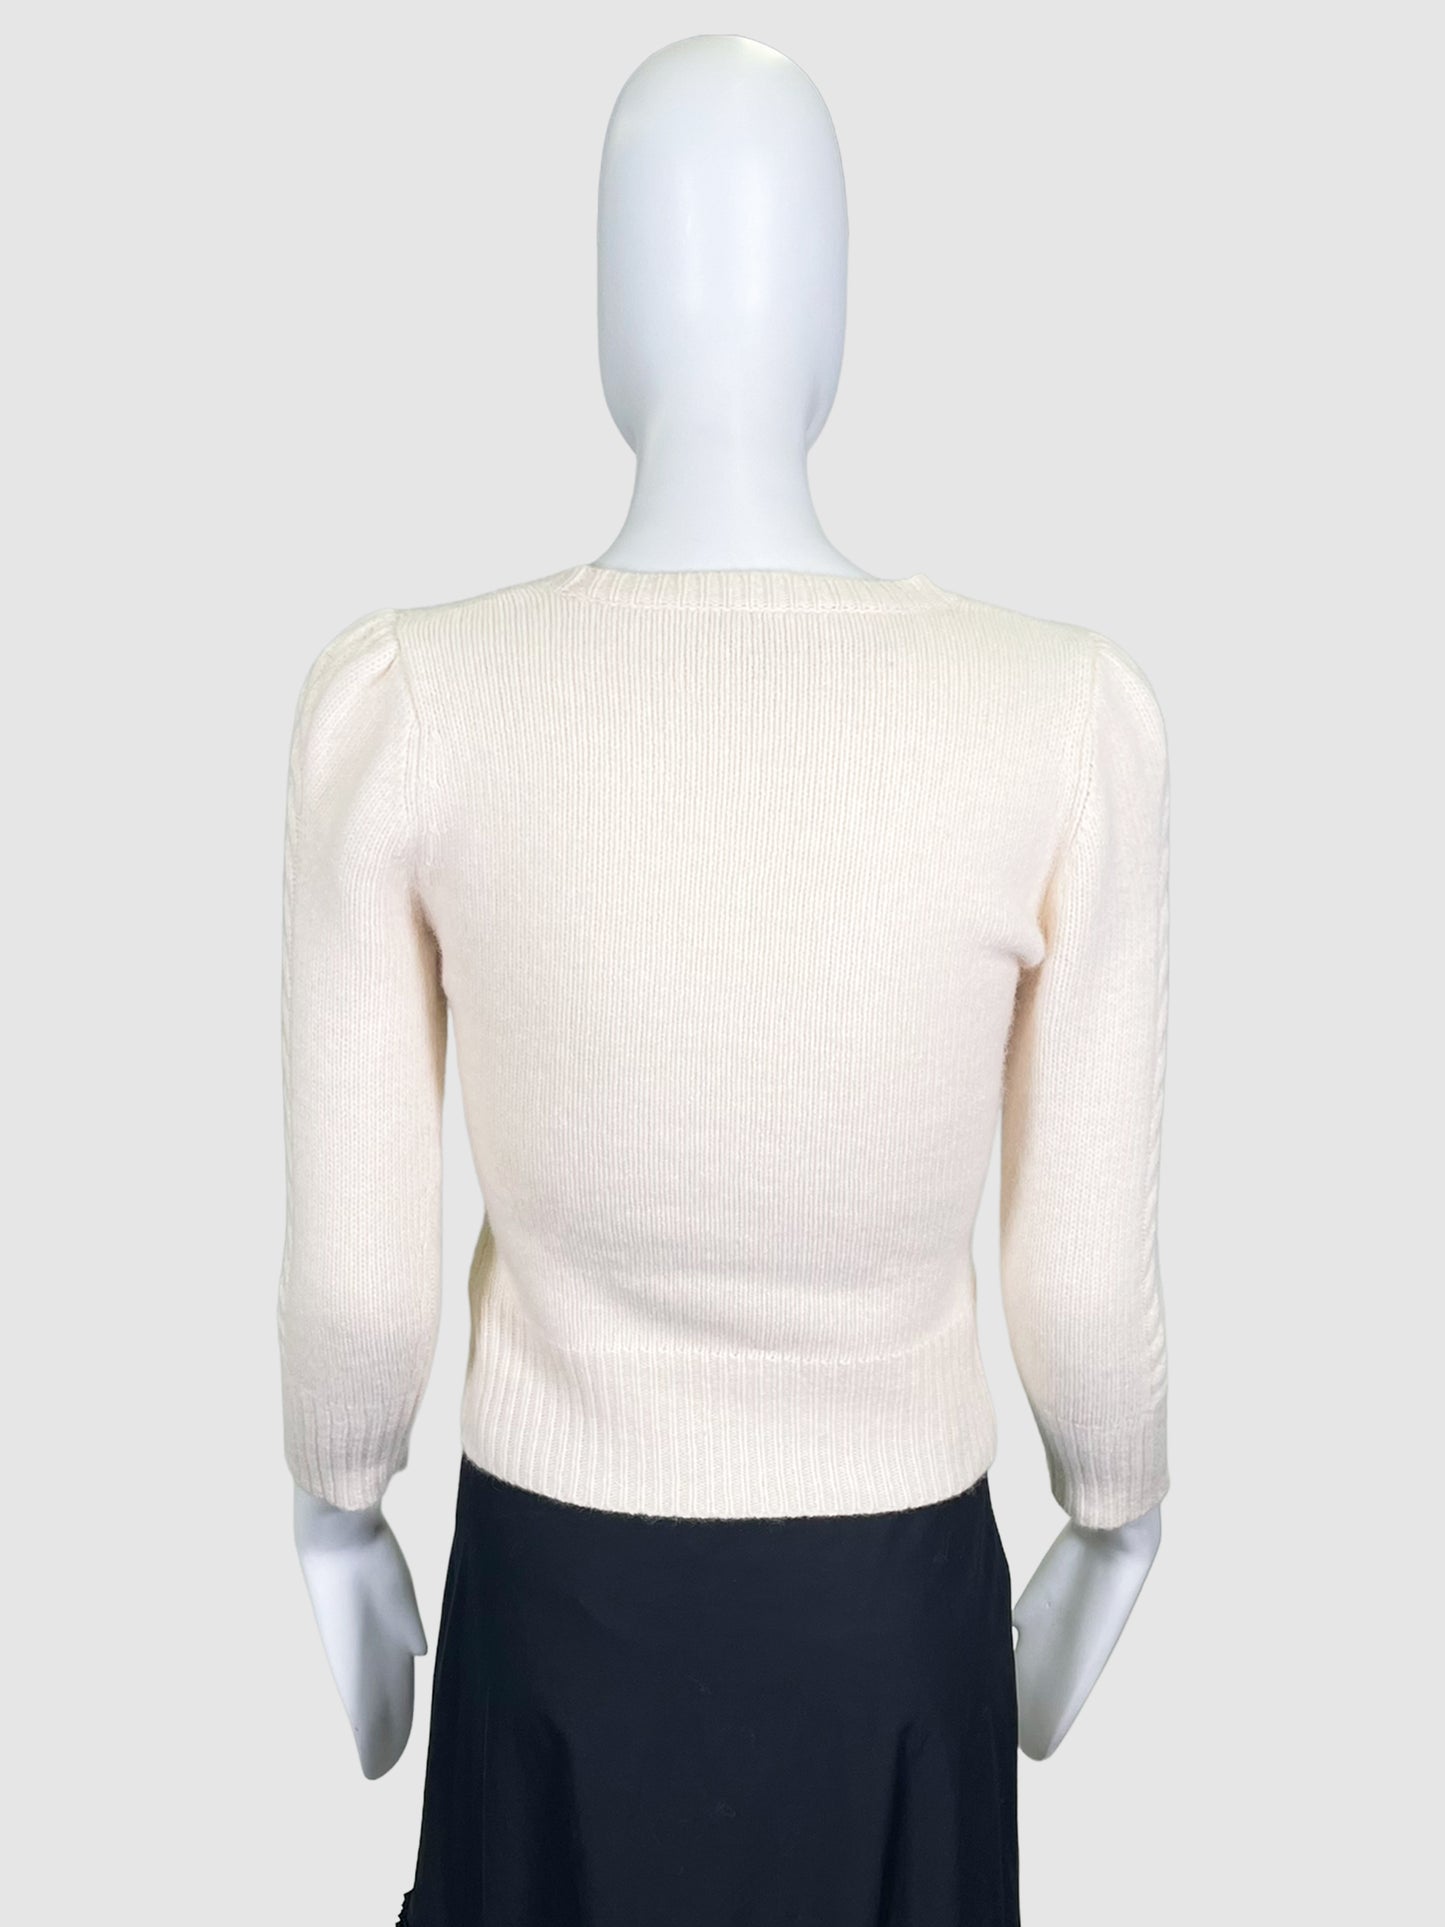 Diane von Furstenburg Wool Sweater - Size S